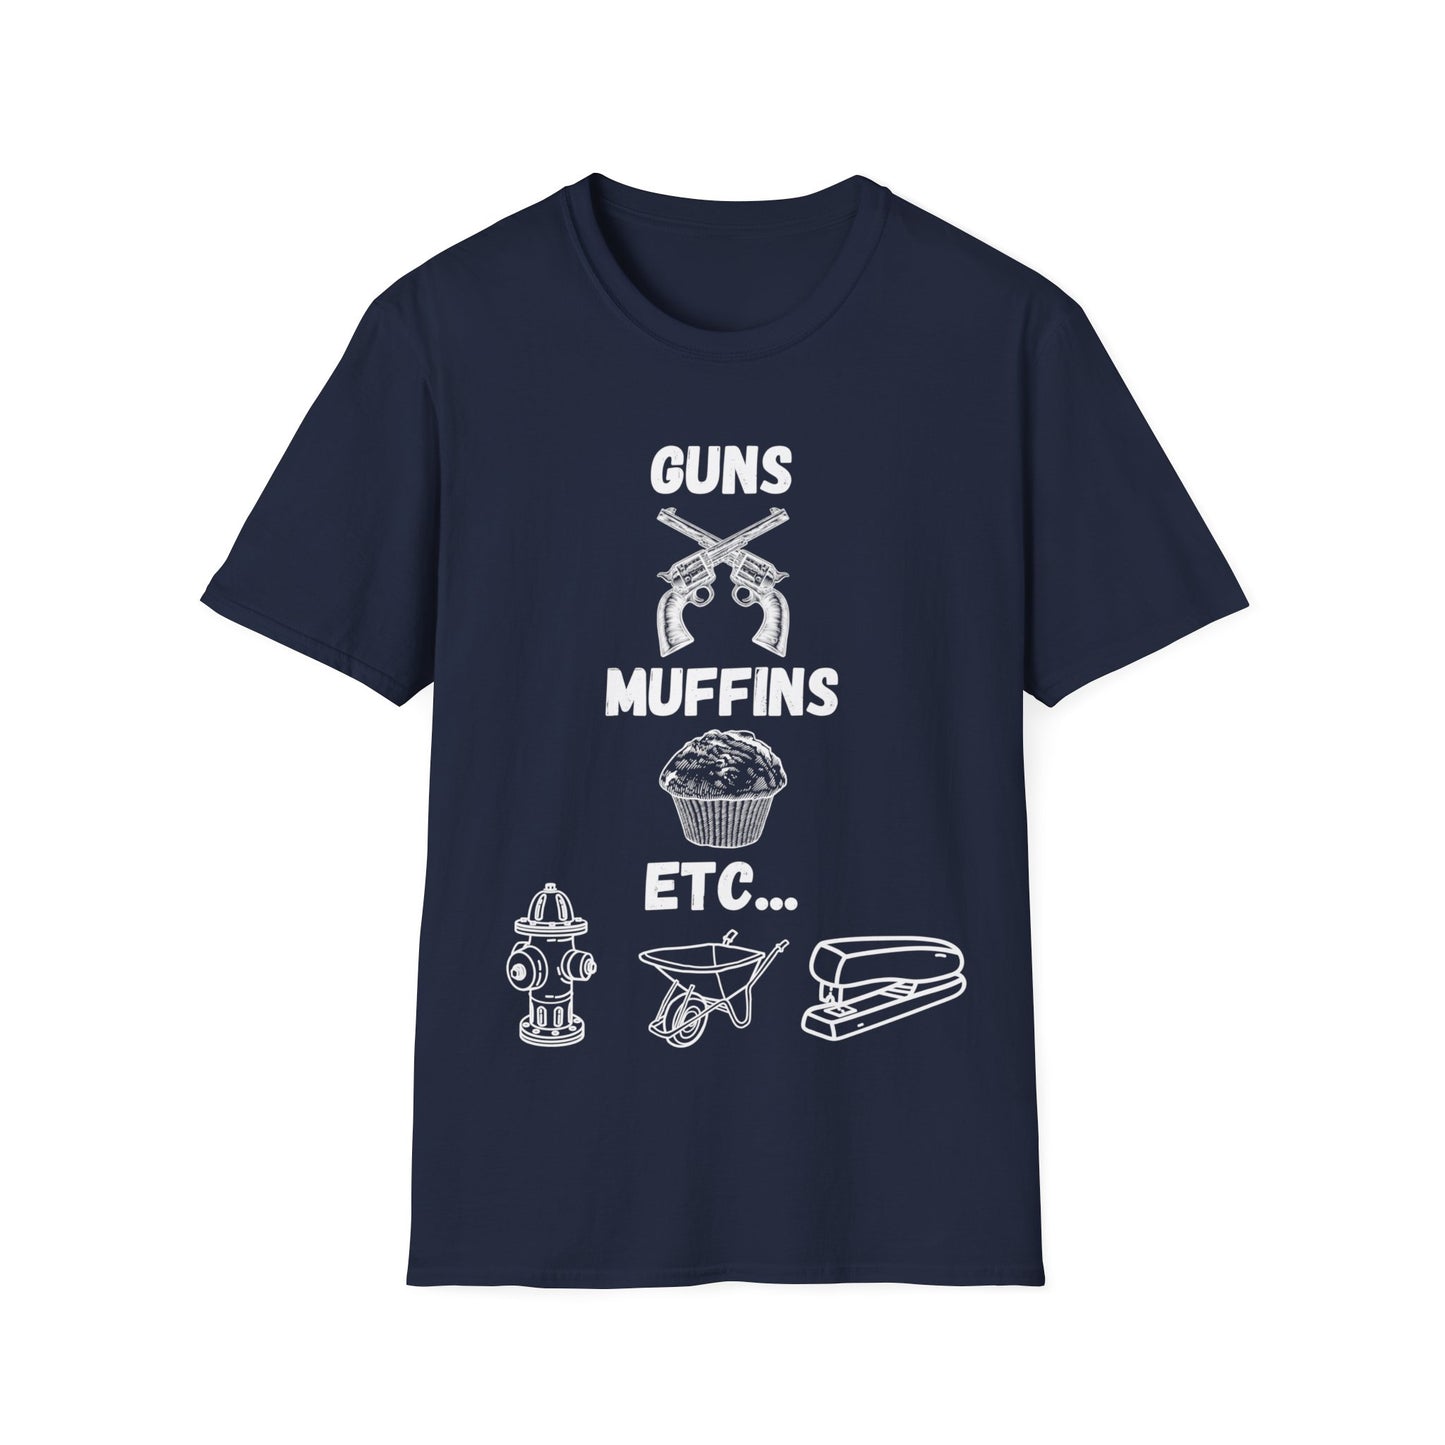 "Guns, Muffins, Etc." Shirt